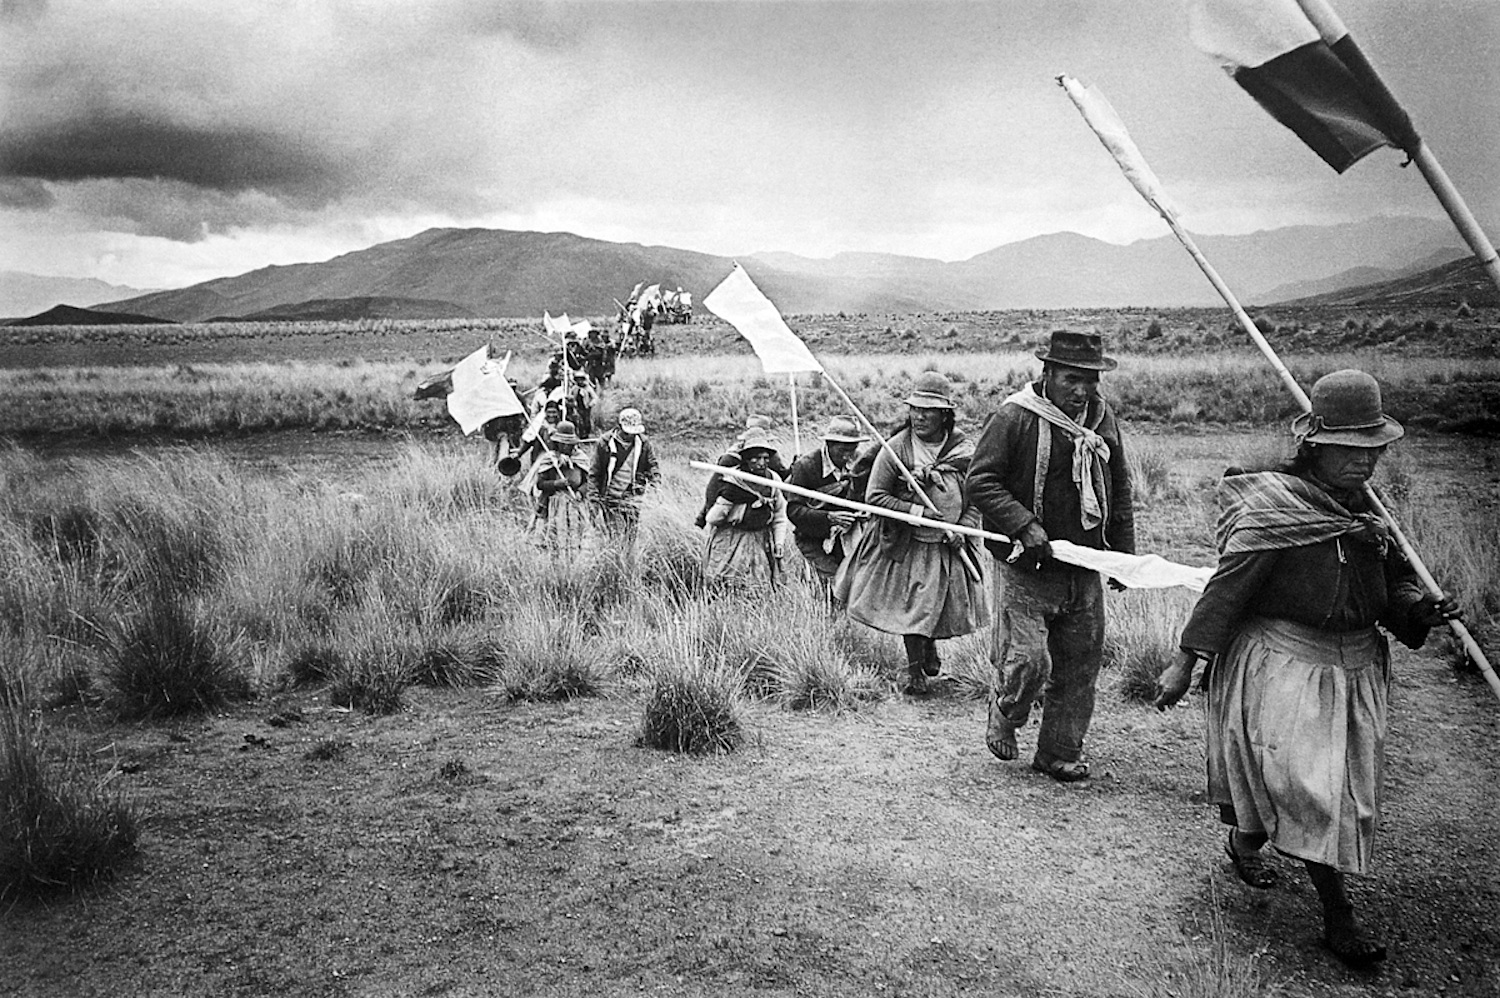  Melchor Lima / Toma de tierras en la comunidad campesina Macará / Melgar, Puno, 1989.&nbsp; © TAFOS 